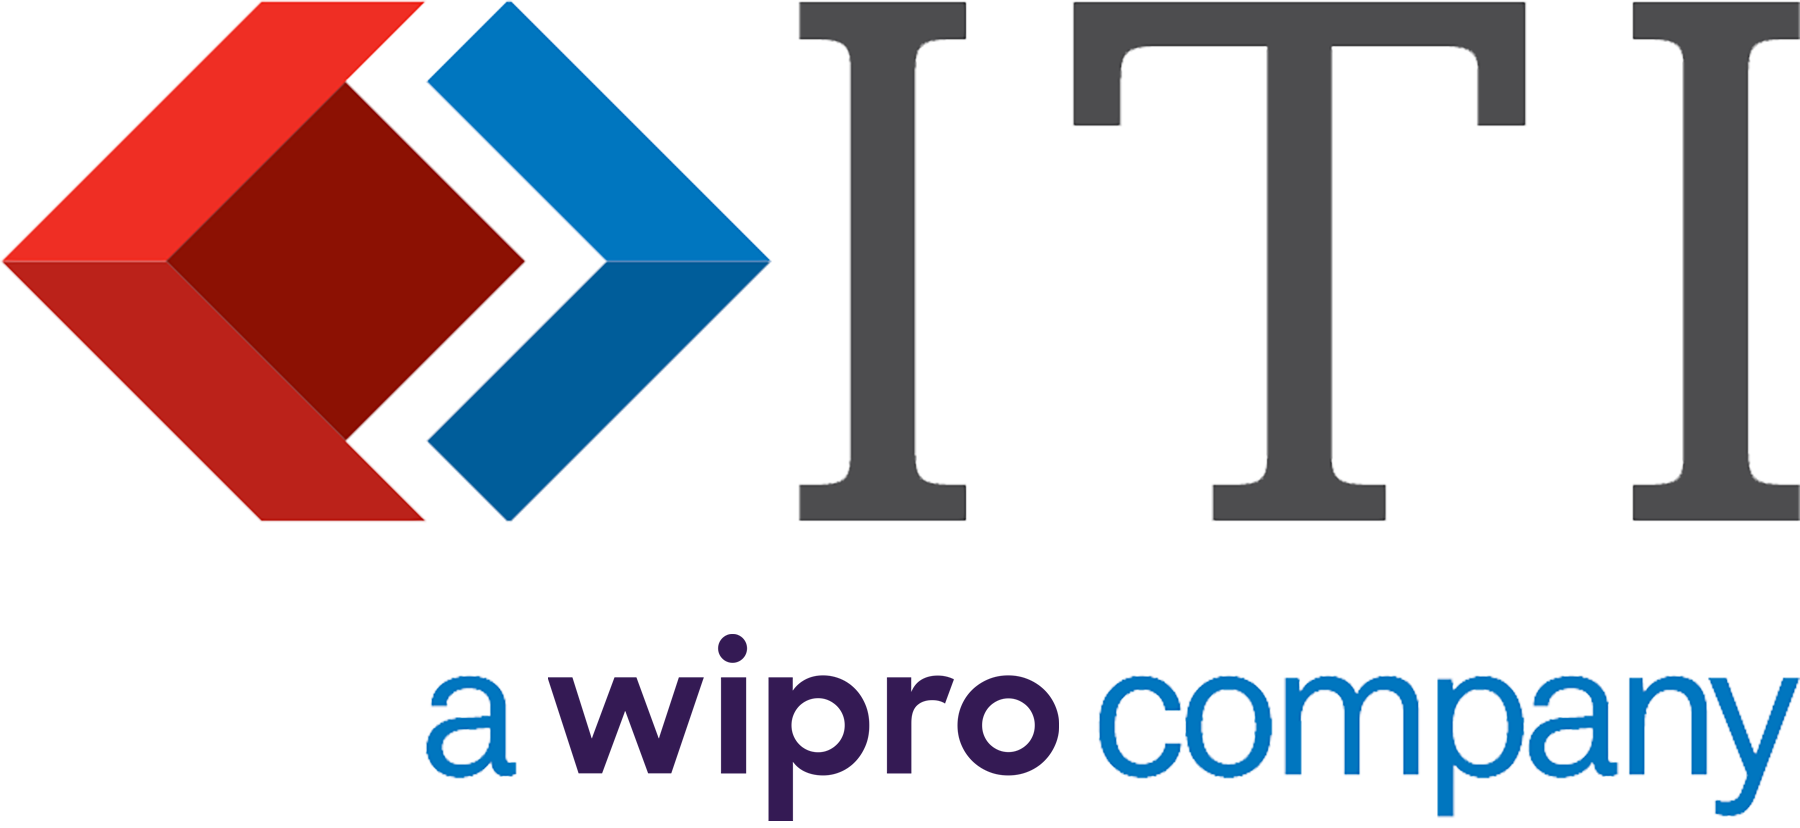 ITI a wipro company